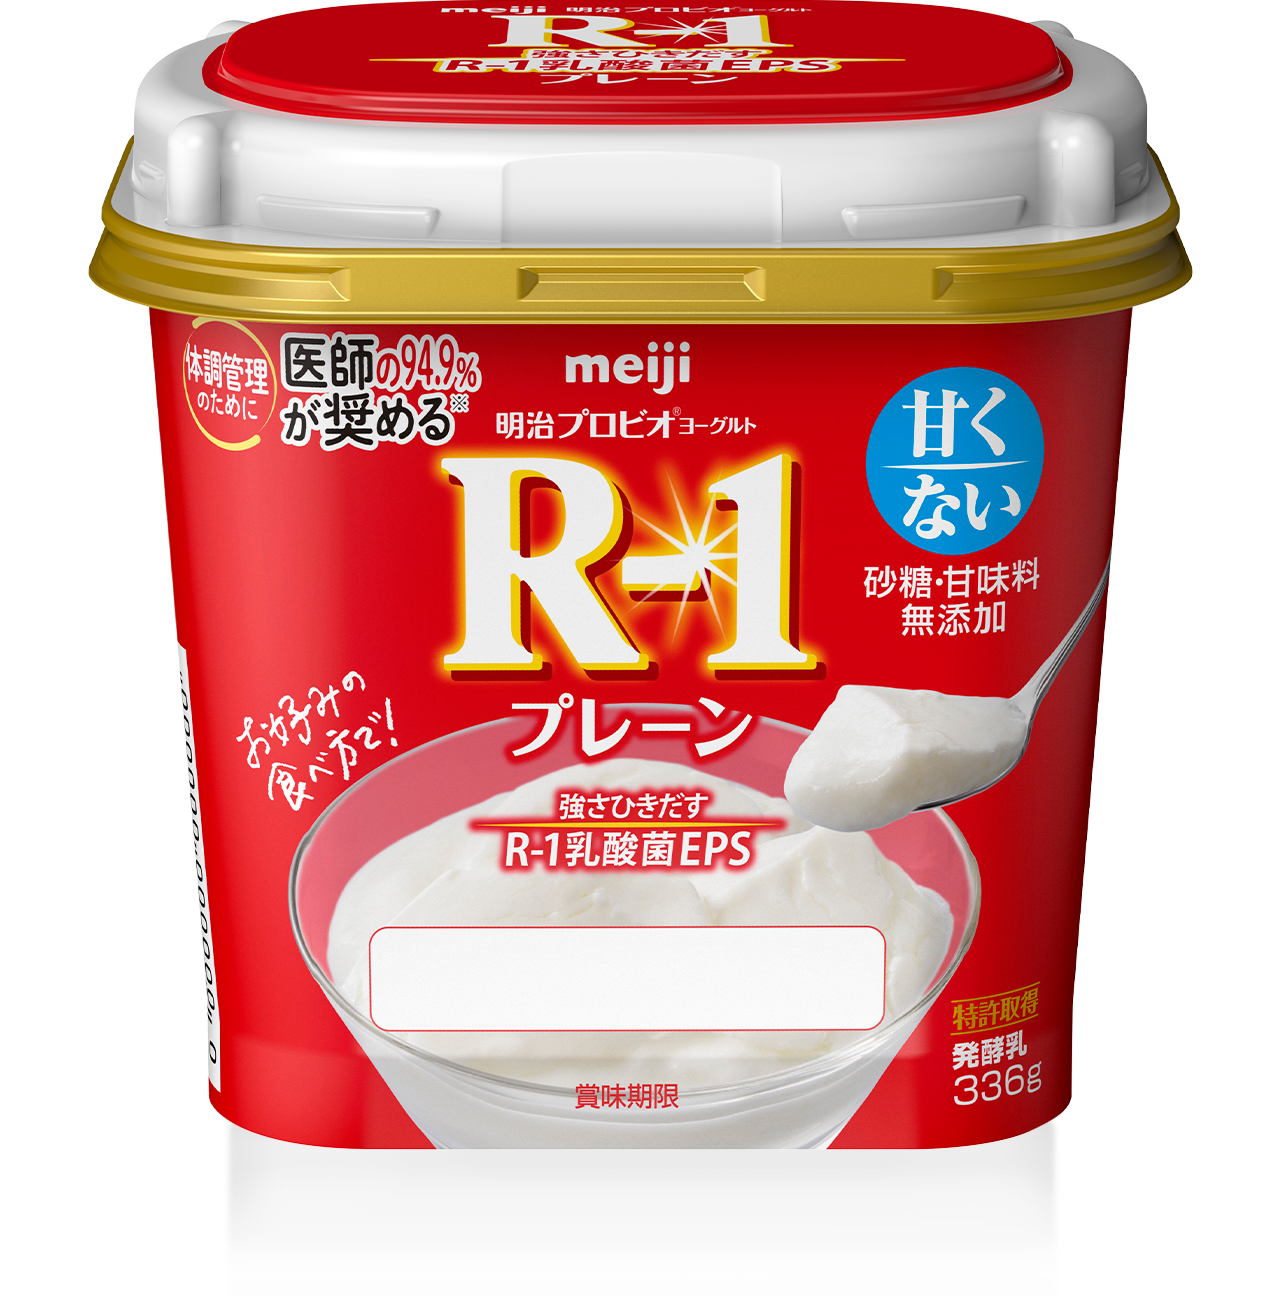 明治益生酸奶R-1纯味不甜(336g)